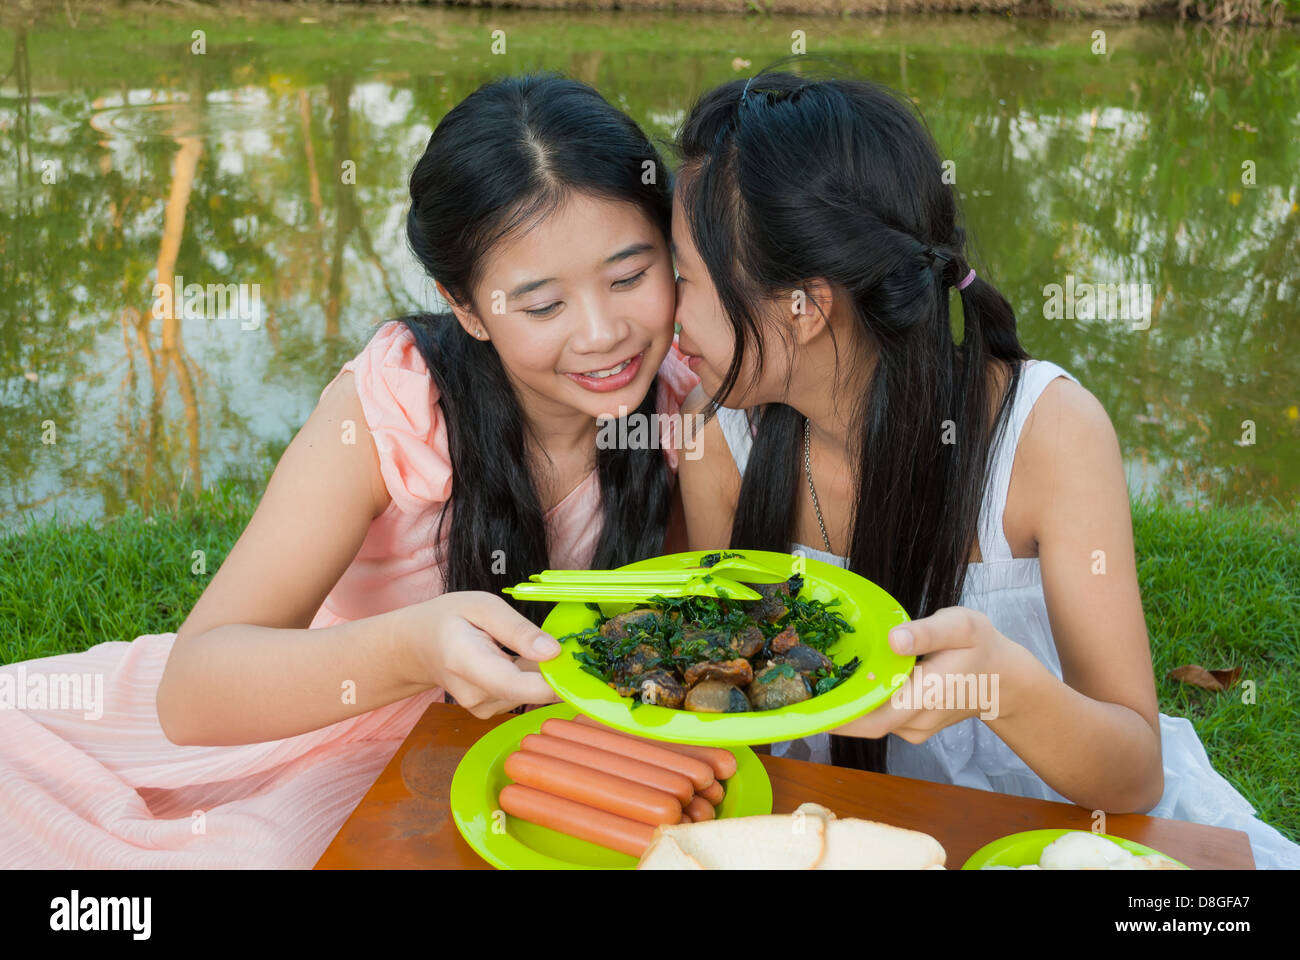 Asiatische Thai Schwester Picknick zusammen neben Sumpf. Stockfoto